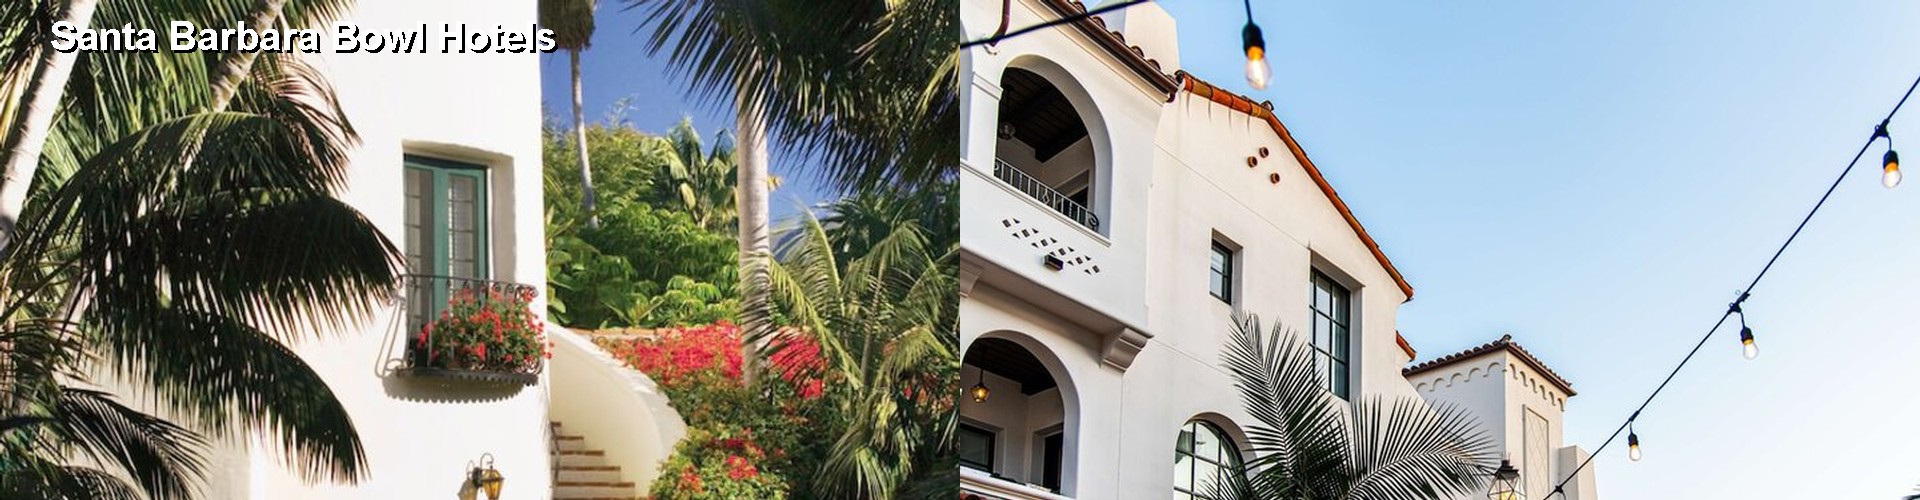 5 Best Hotels near Santa Barbara Bowl